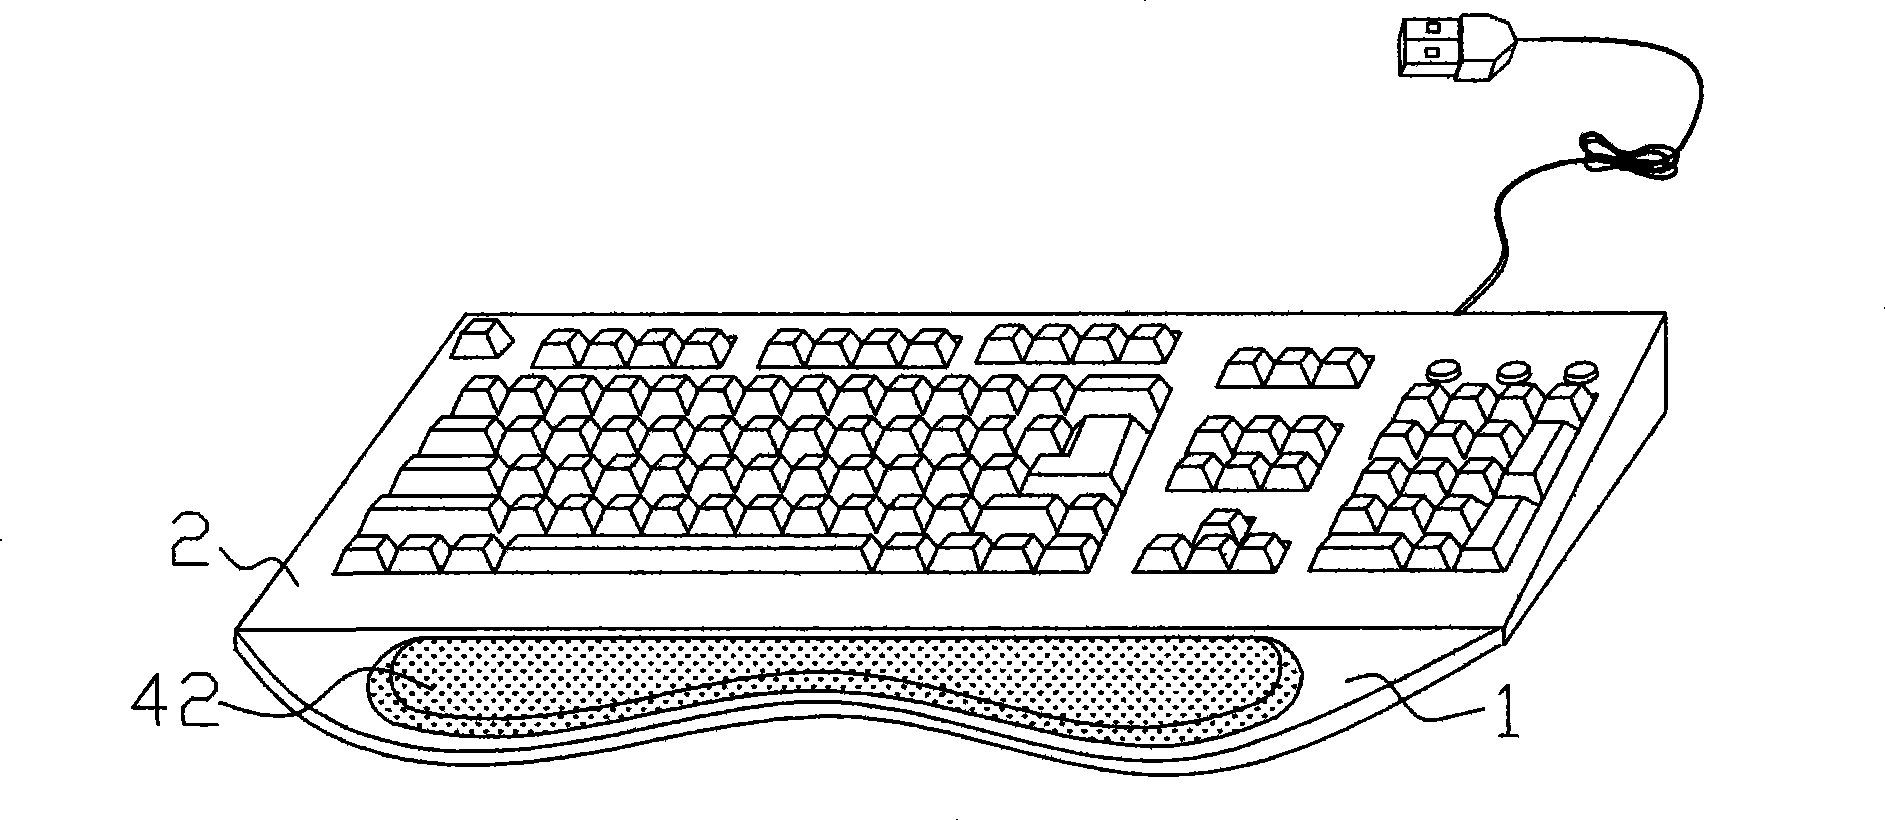 Hommization keyboard